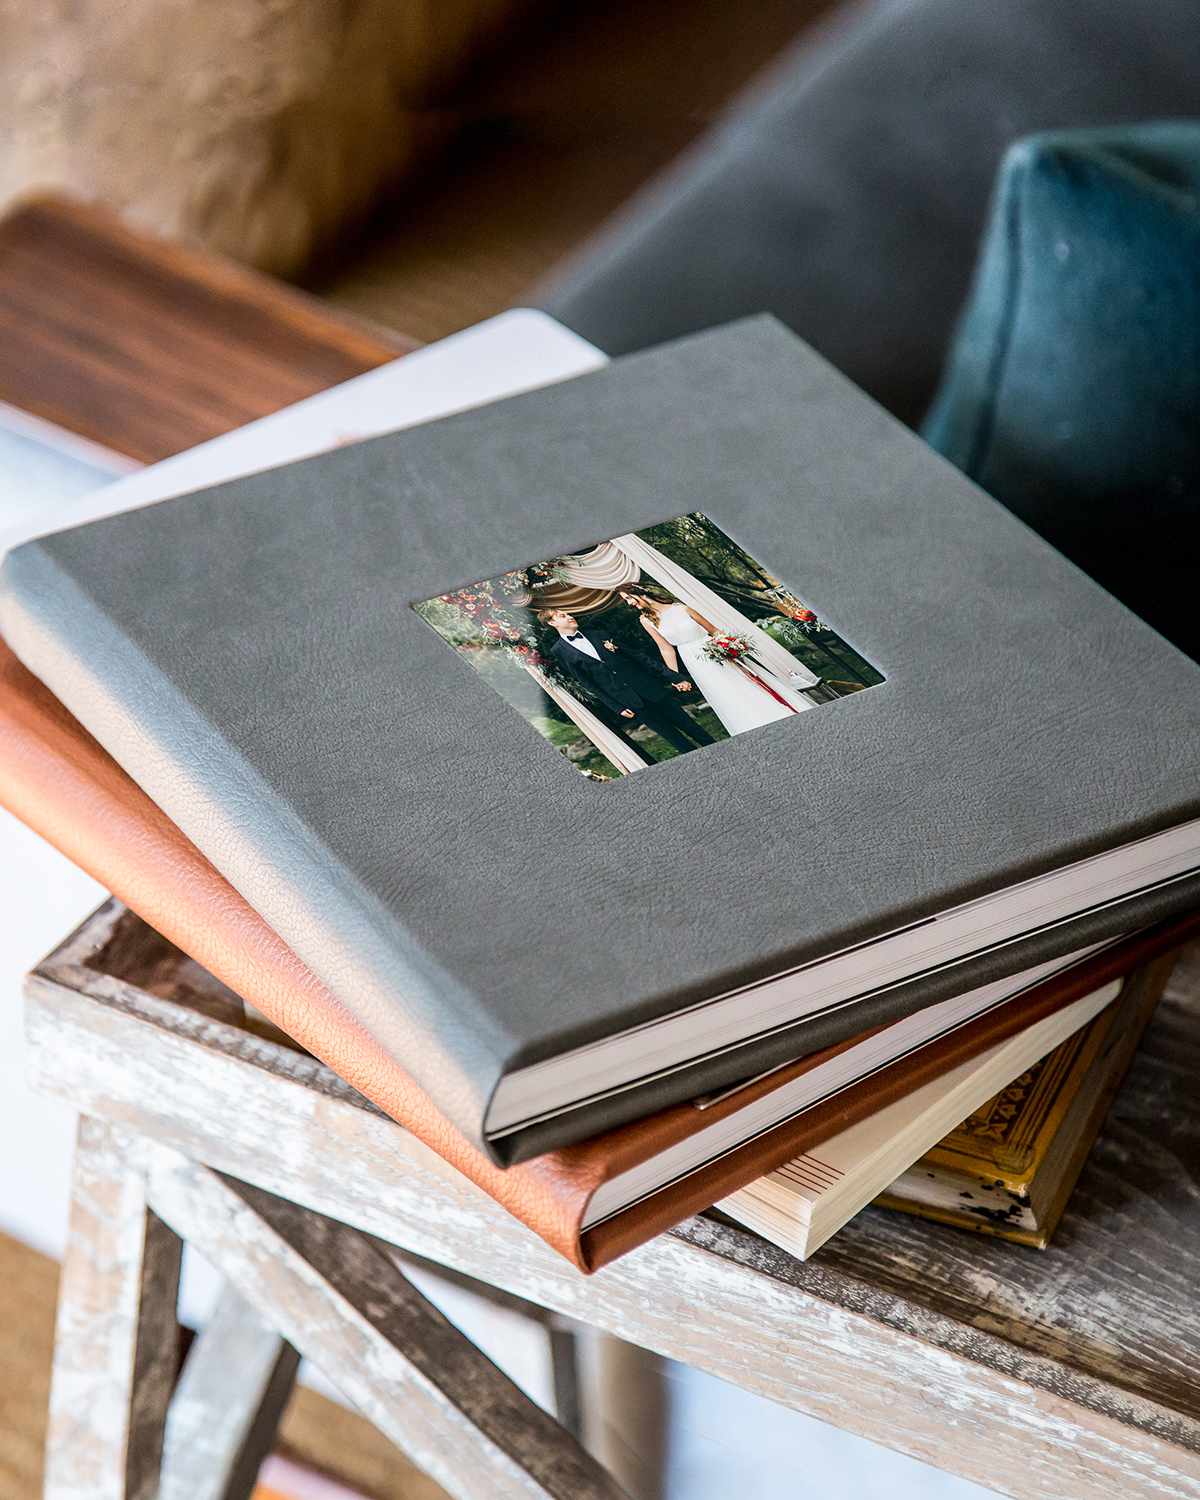 wedding photo albums lay-flat binding gray burnt orange on table